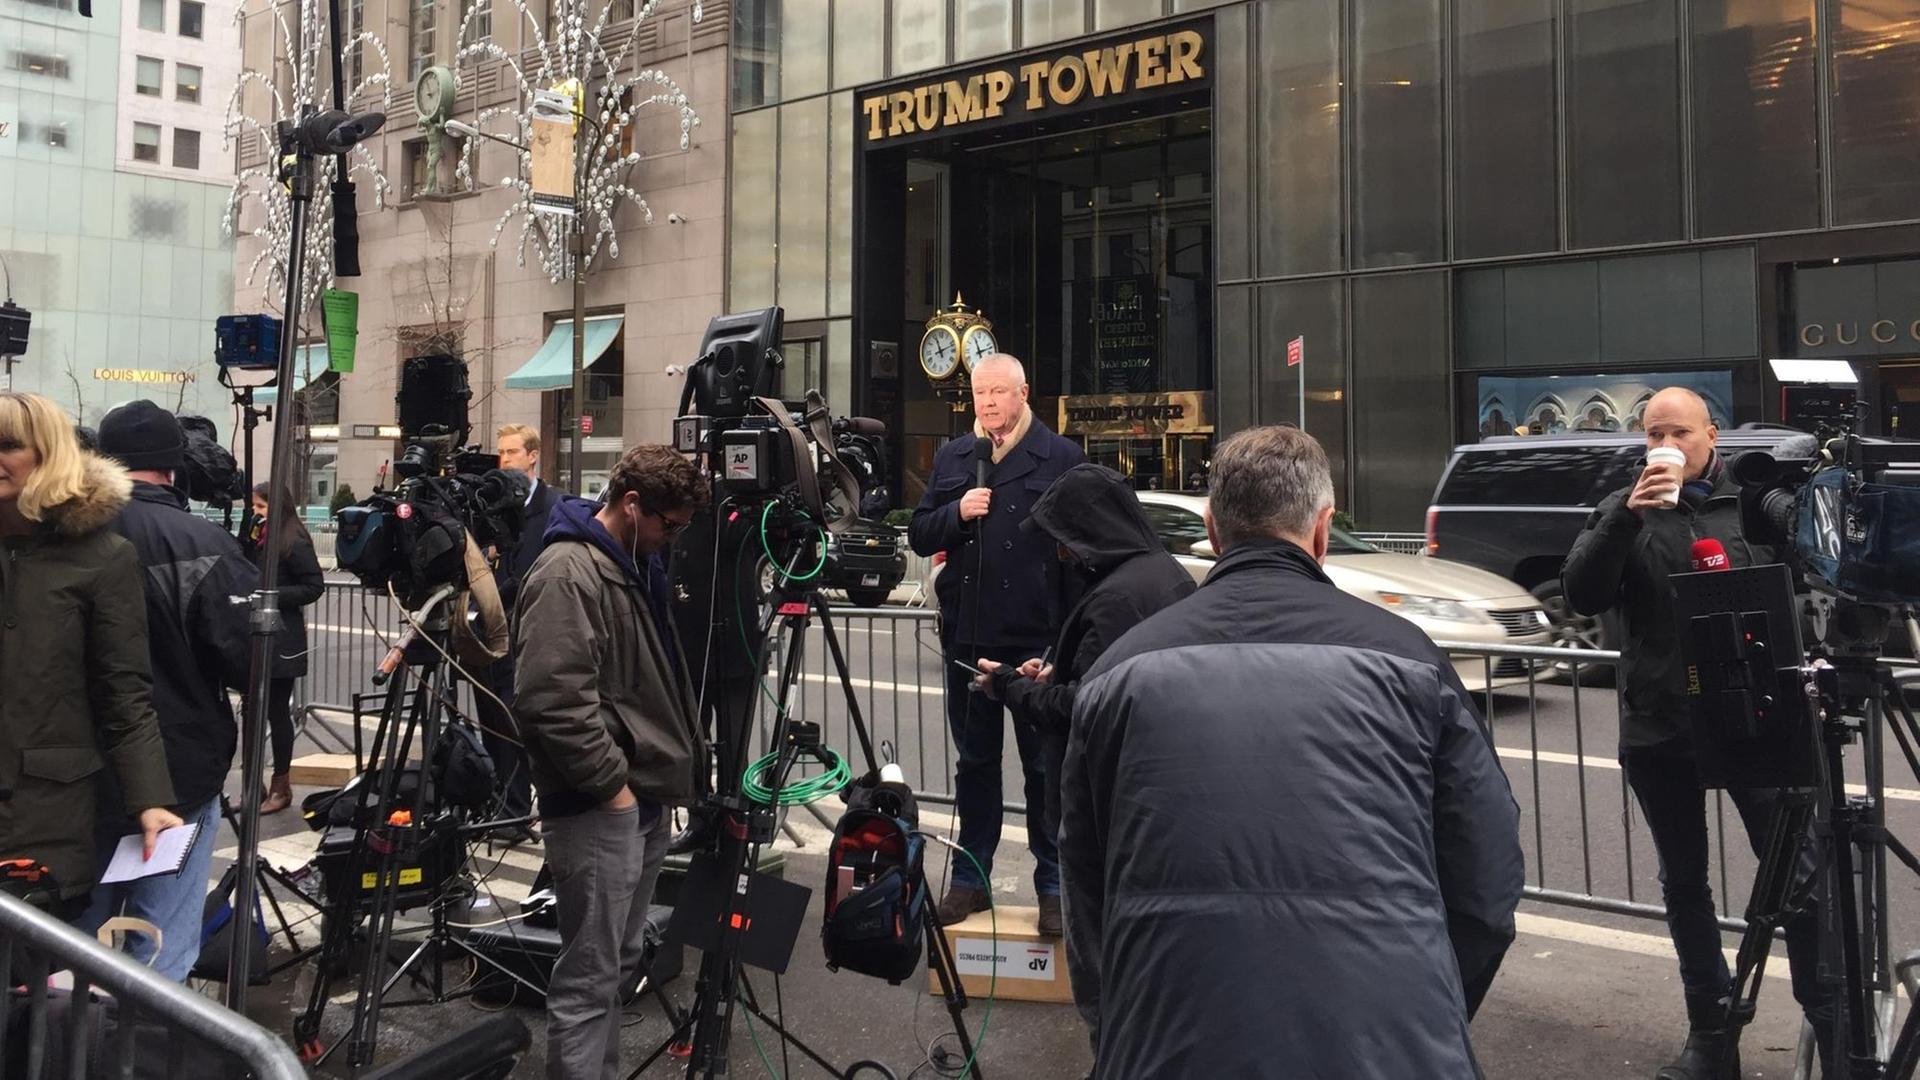 Journalisten berichten am 11.02.2017 vor dem New Yorker Trump Tower während der Pressekonferenz des künftigen US-Präsidenten Trump. Foto: Christina Horsten/dpa | Verwendung weltweit